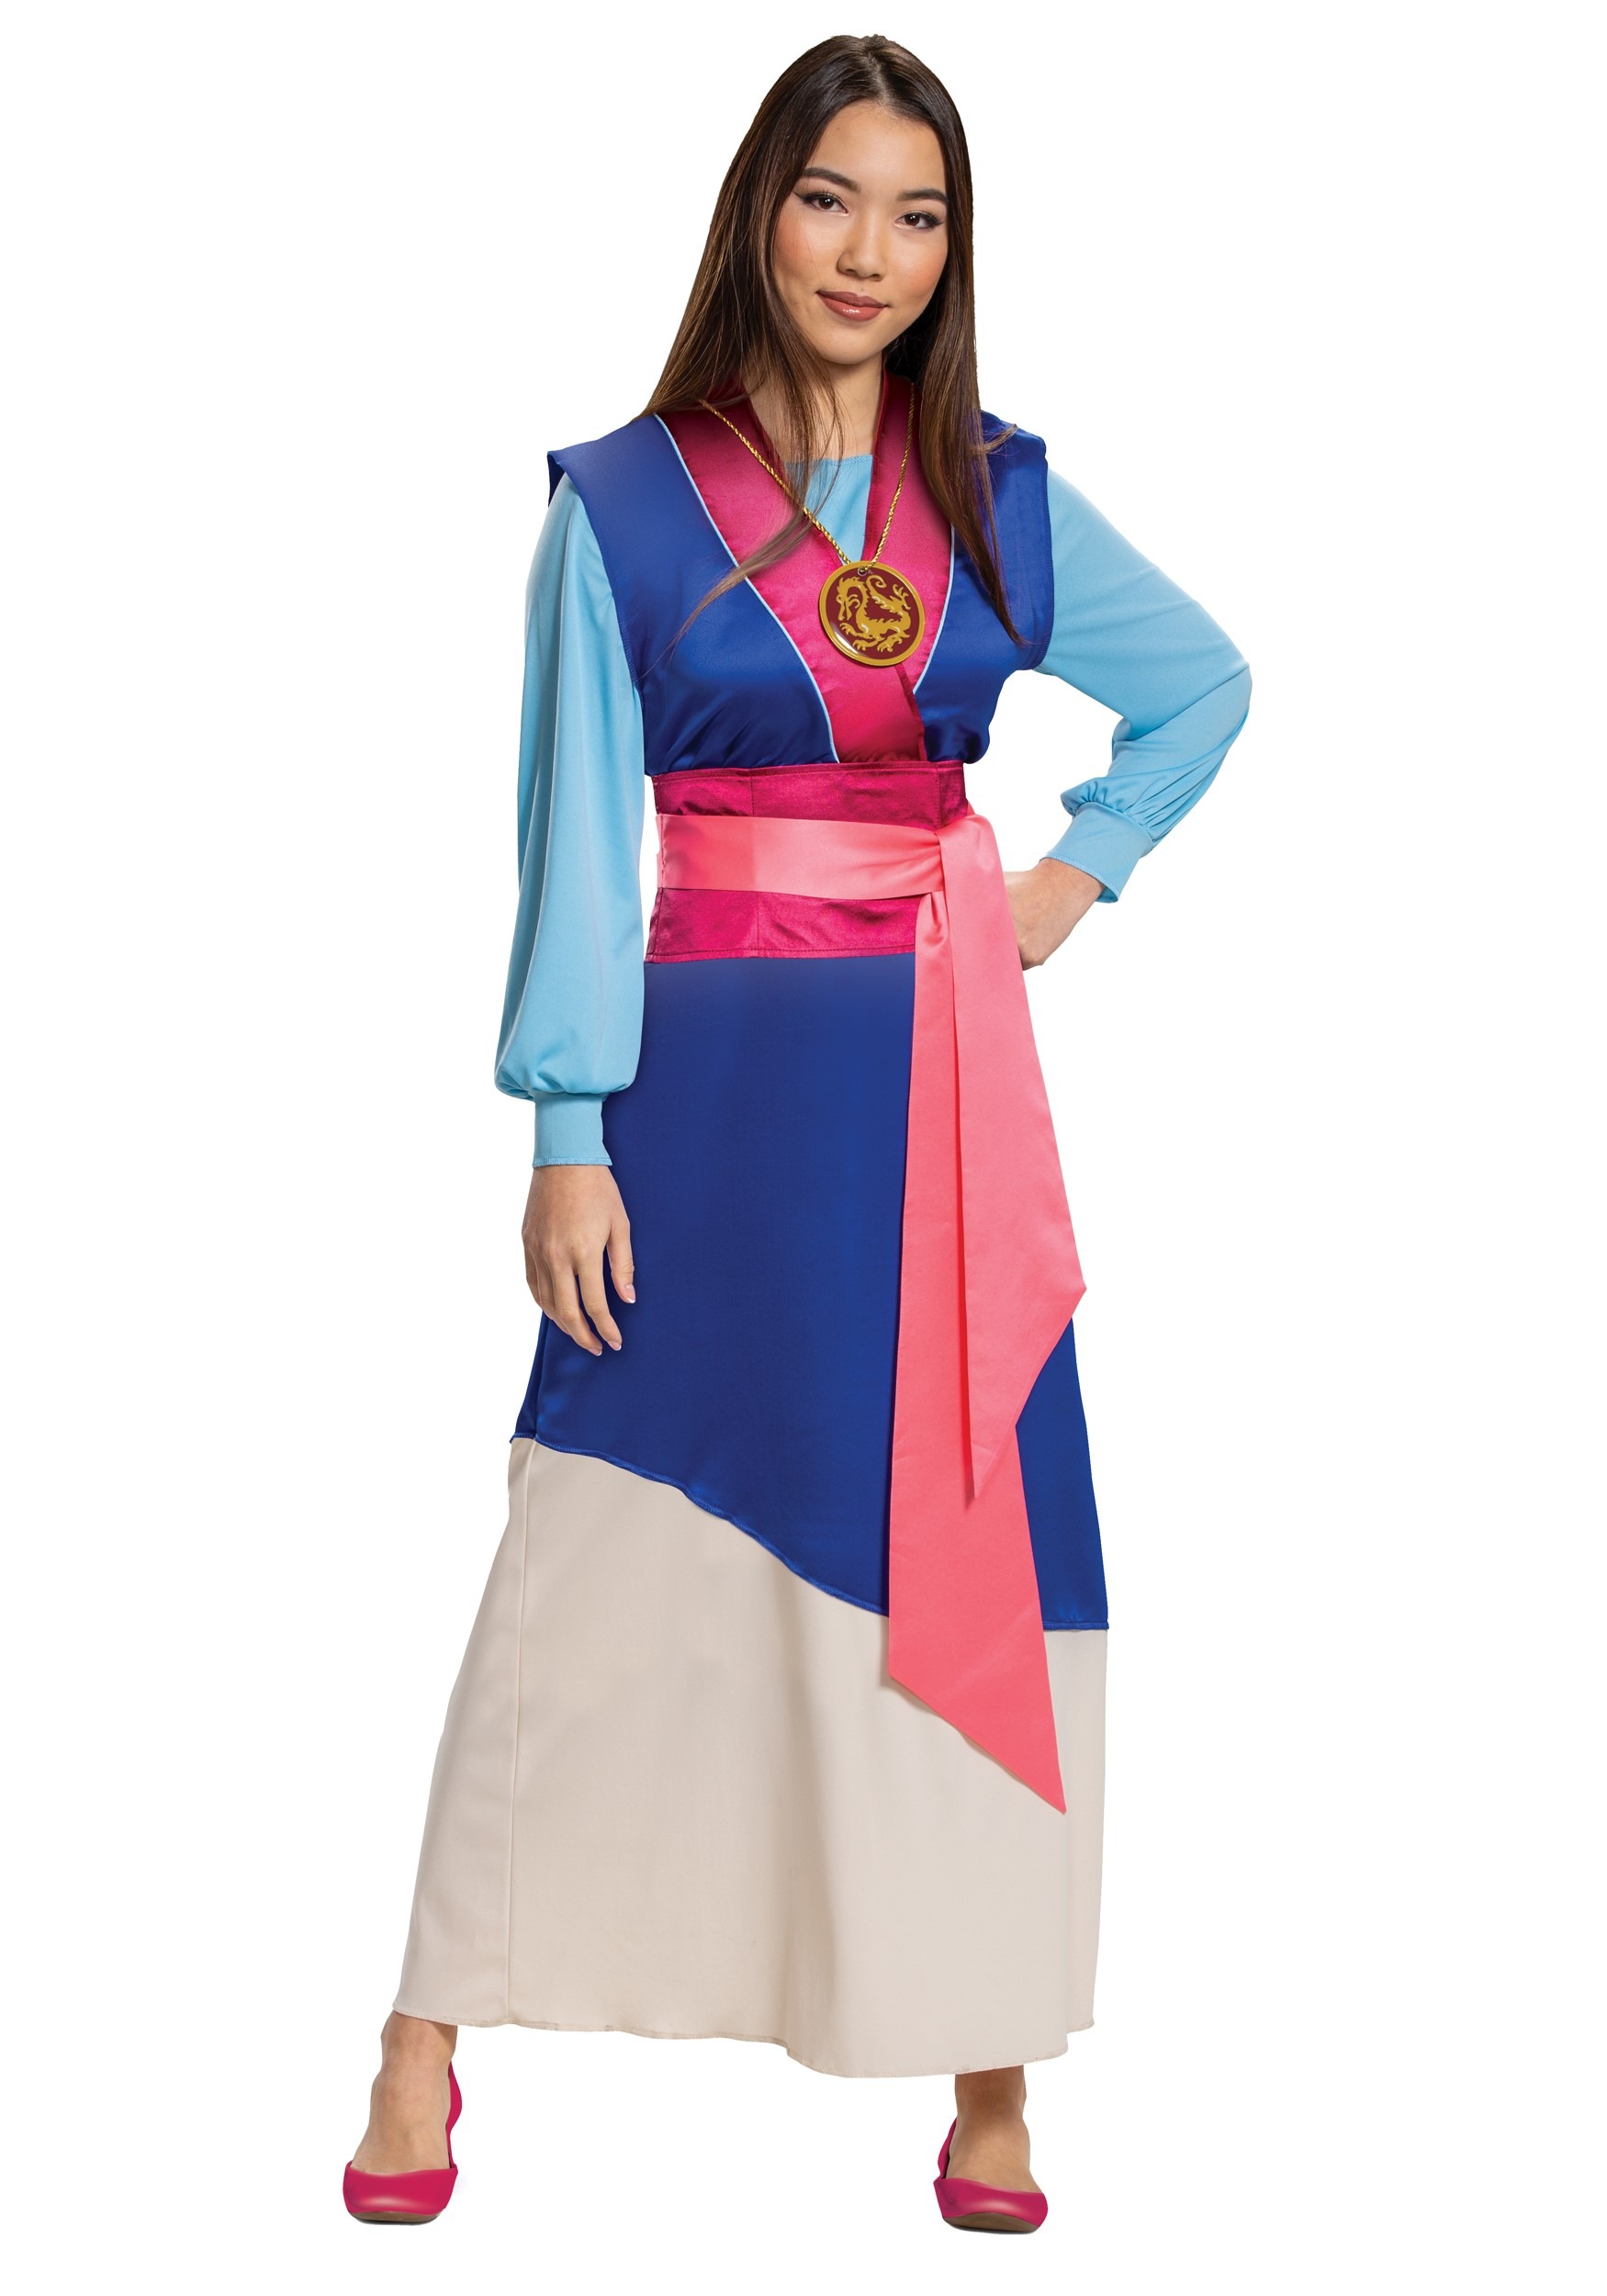 Photos - Fancy Dress Winsun Dress Disguise Limited Disney Mulan Women's Blue Dress Costume Blue/Brown 